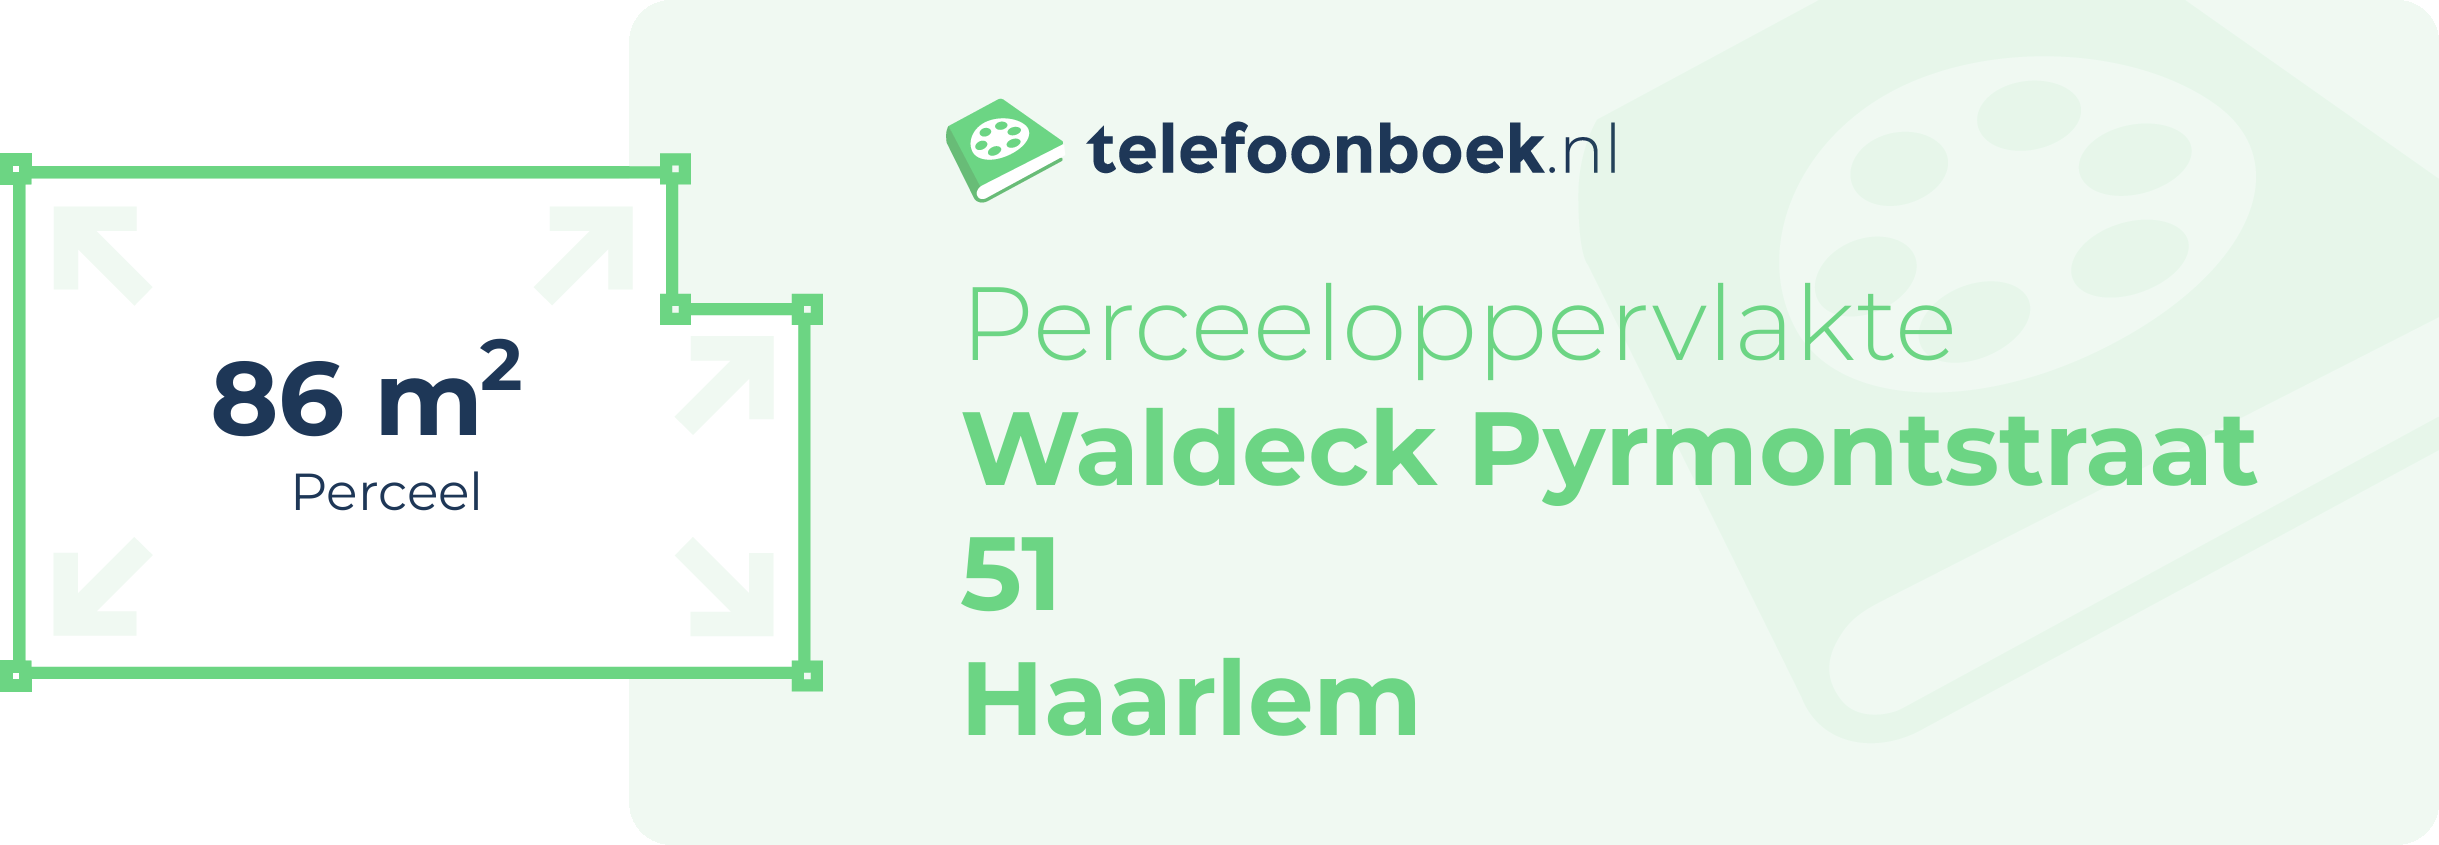 Perceeloppervlakte Waldeck Pyrmontstraat 51 Haarlem